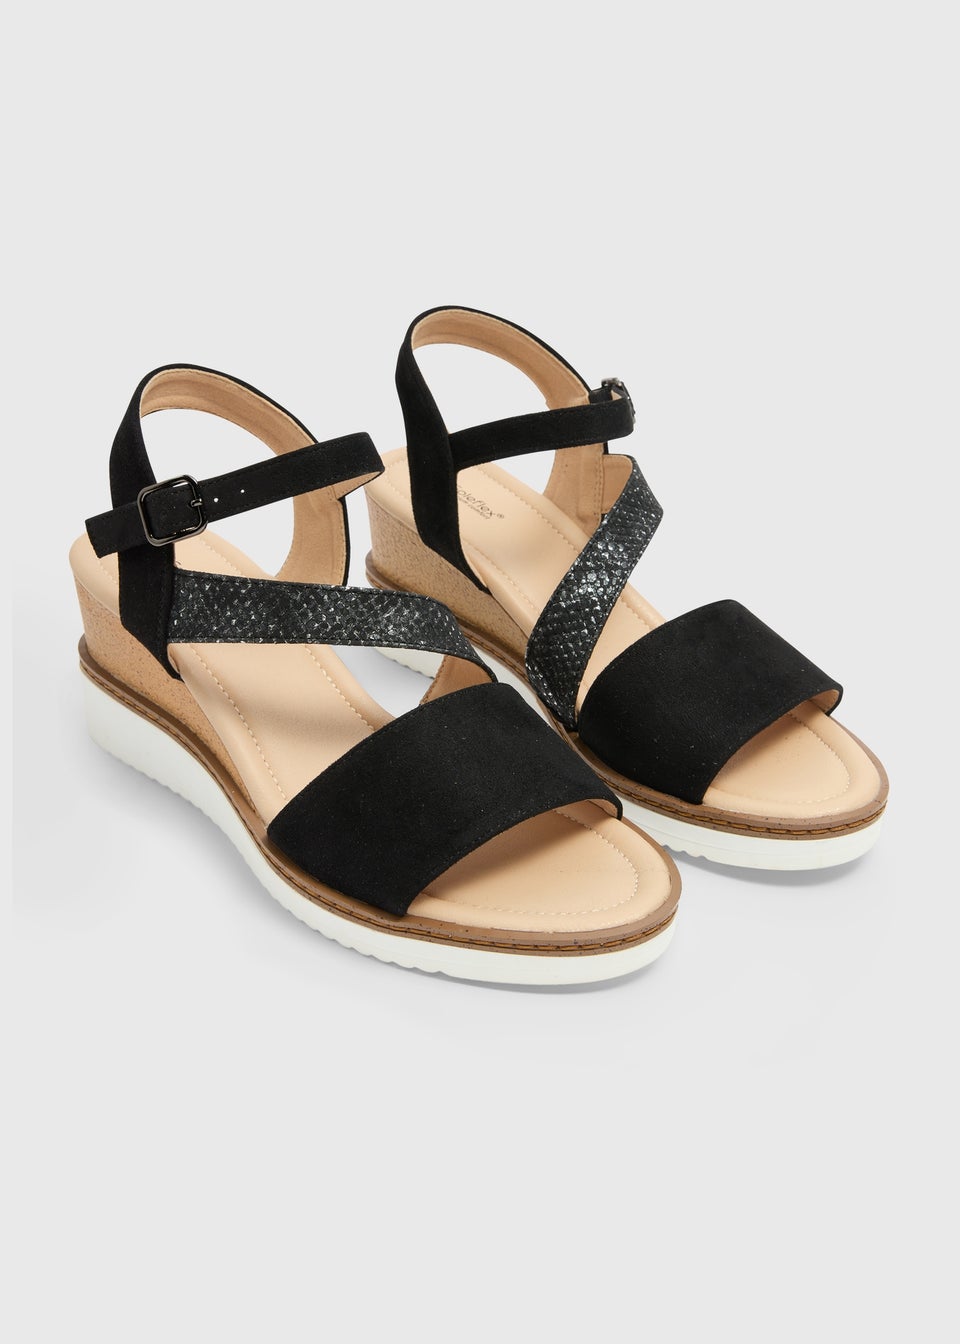 Soleflex Black White Sole Wedge Sandals